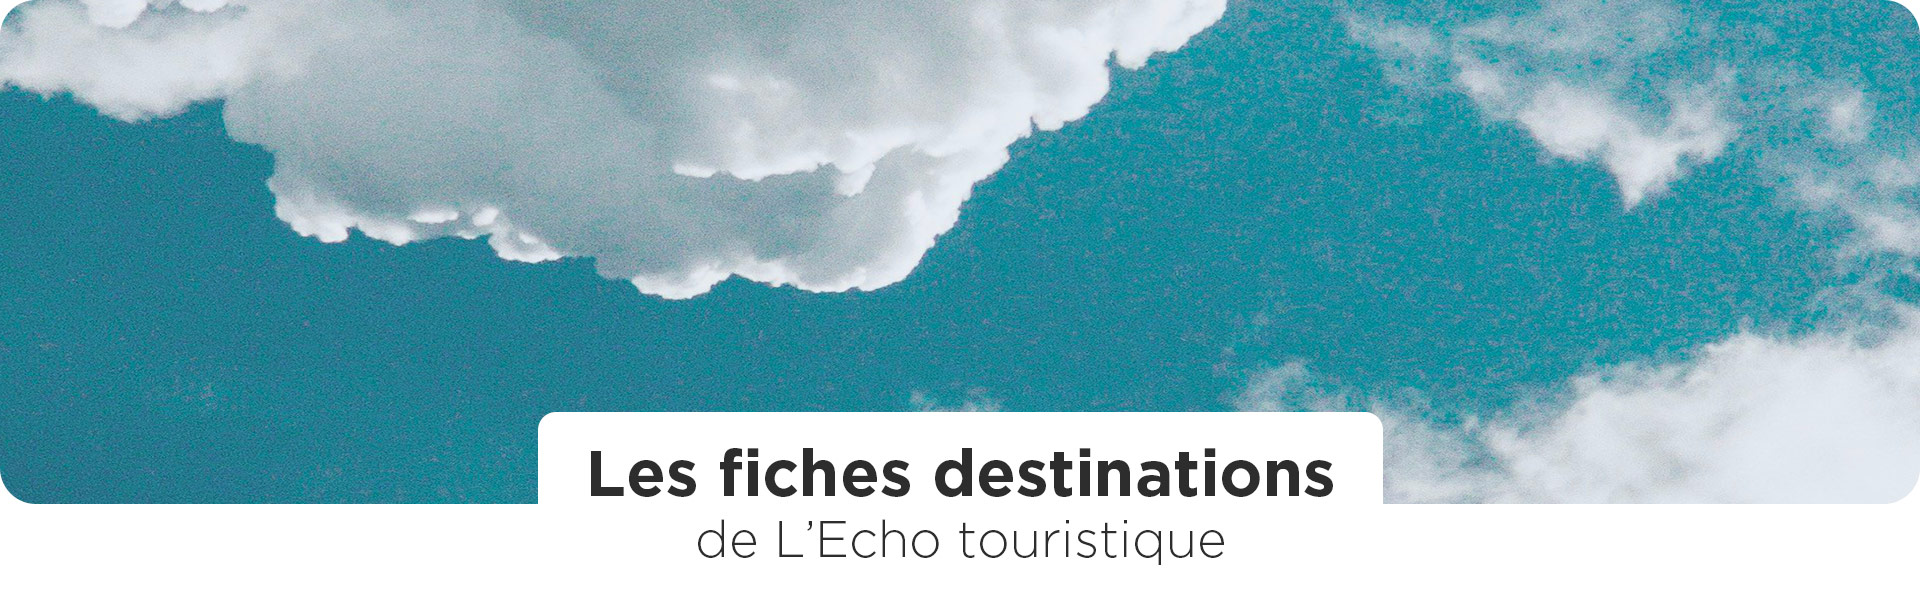 Les fiches destinations de l'Echo touristique